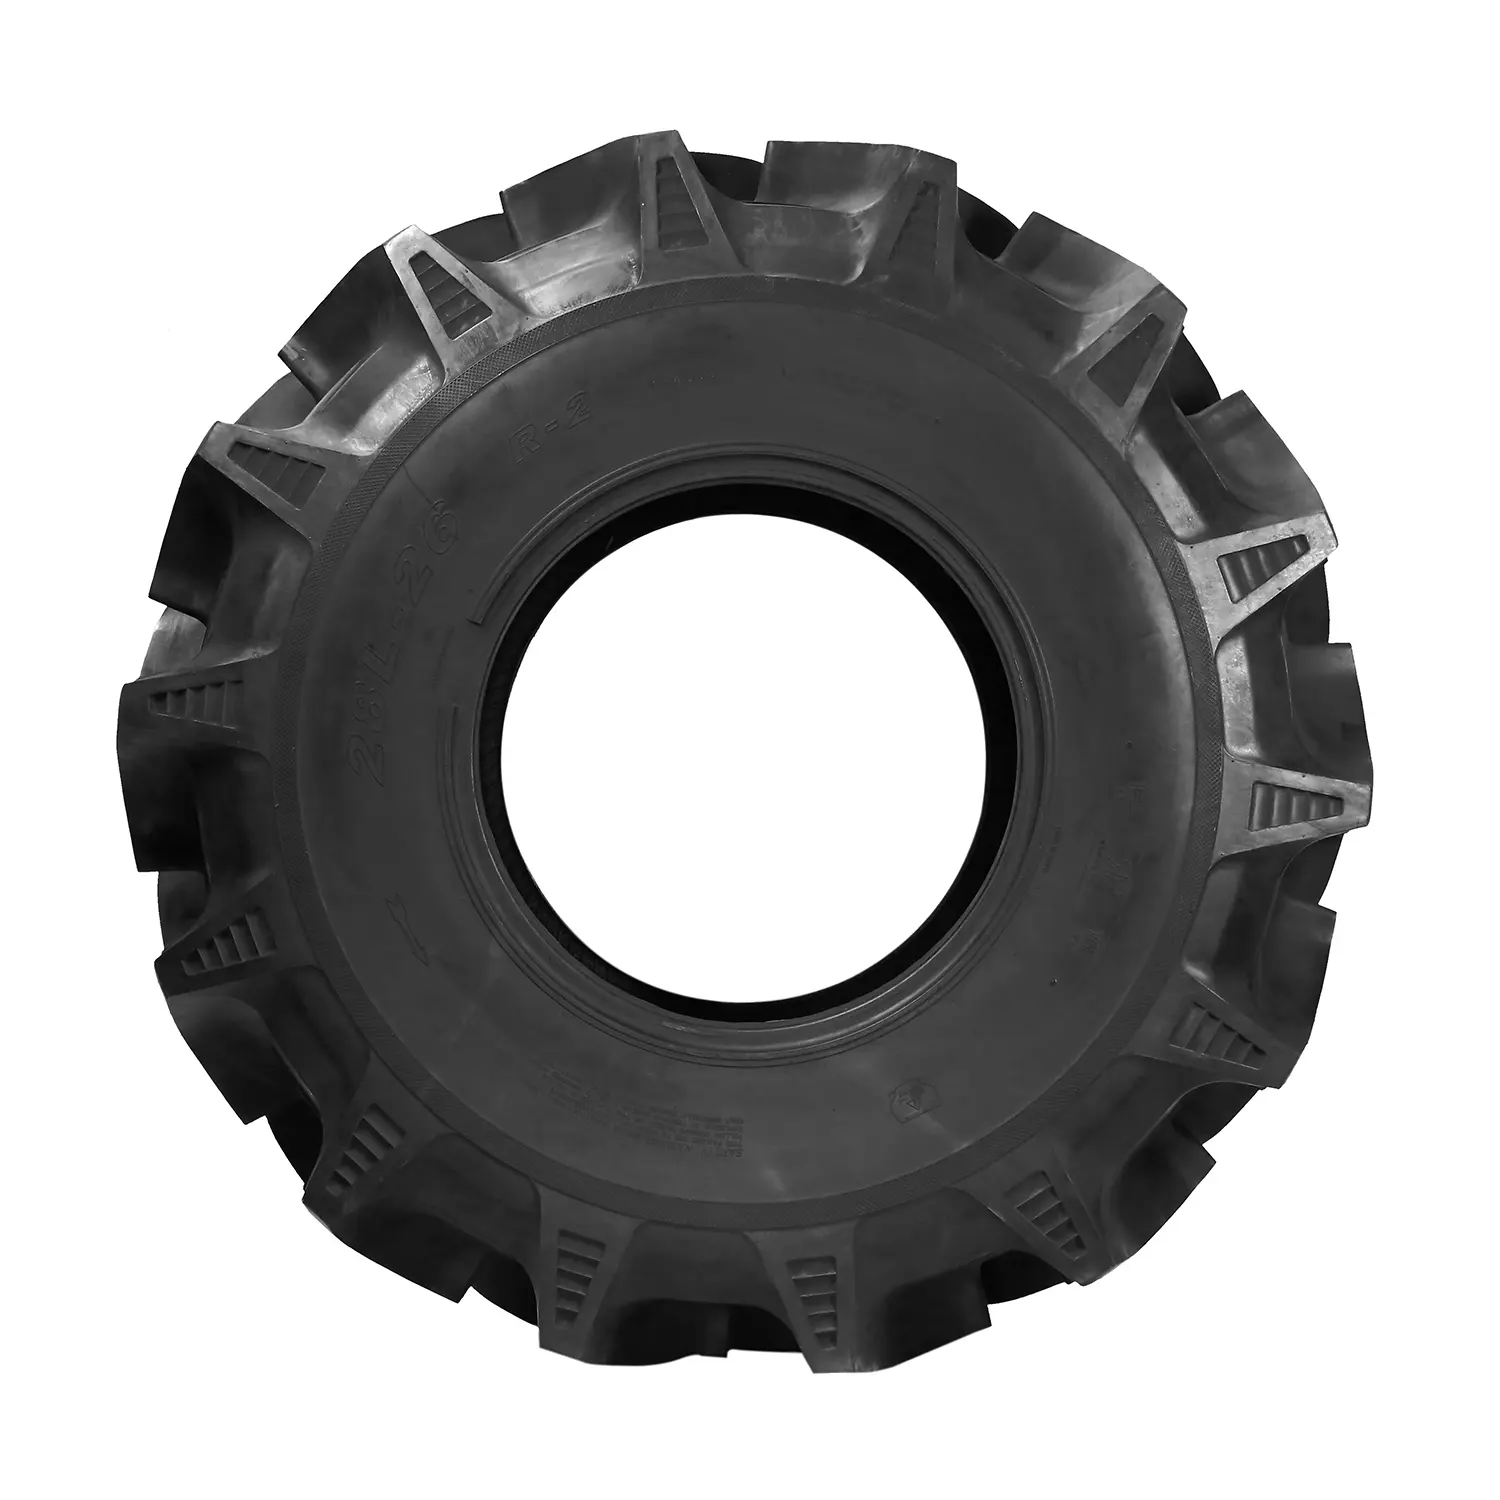 Os pneus R-2 tamanho 9.5-20-10Pr podem ser usados em tratores, bem como colheitadeiras